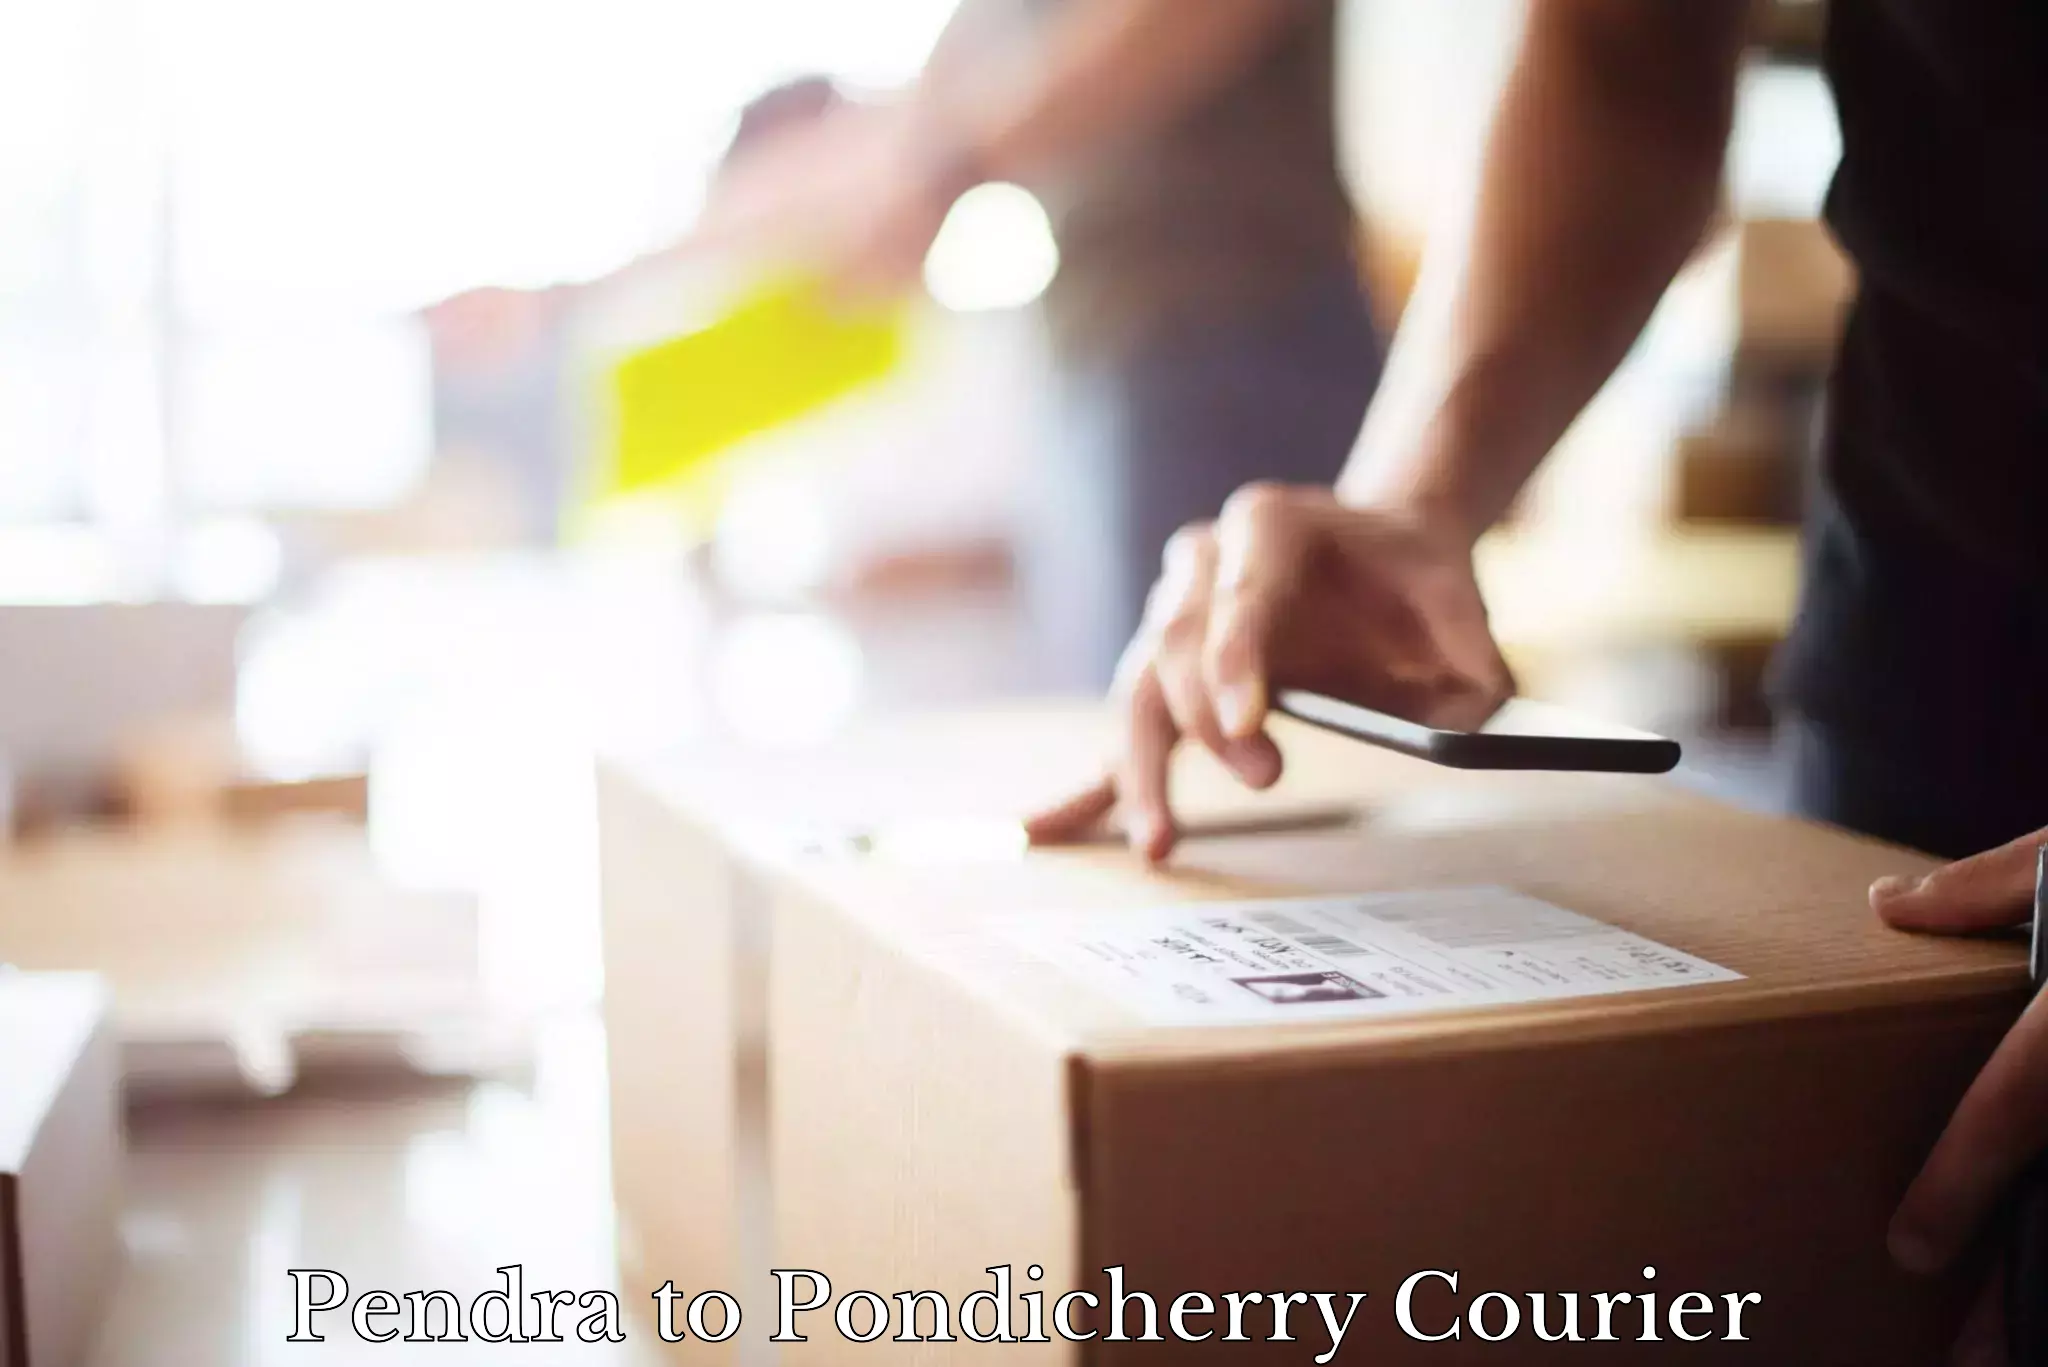 Courier rate comparison Pendra to Pondicherry